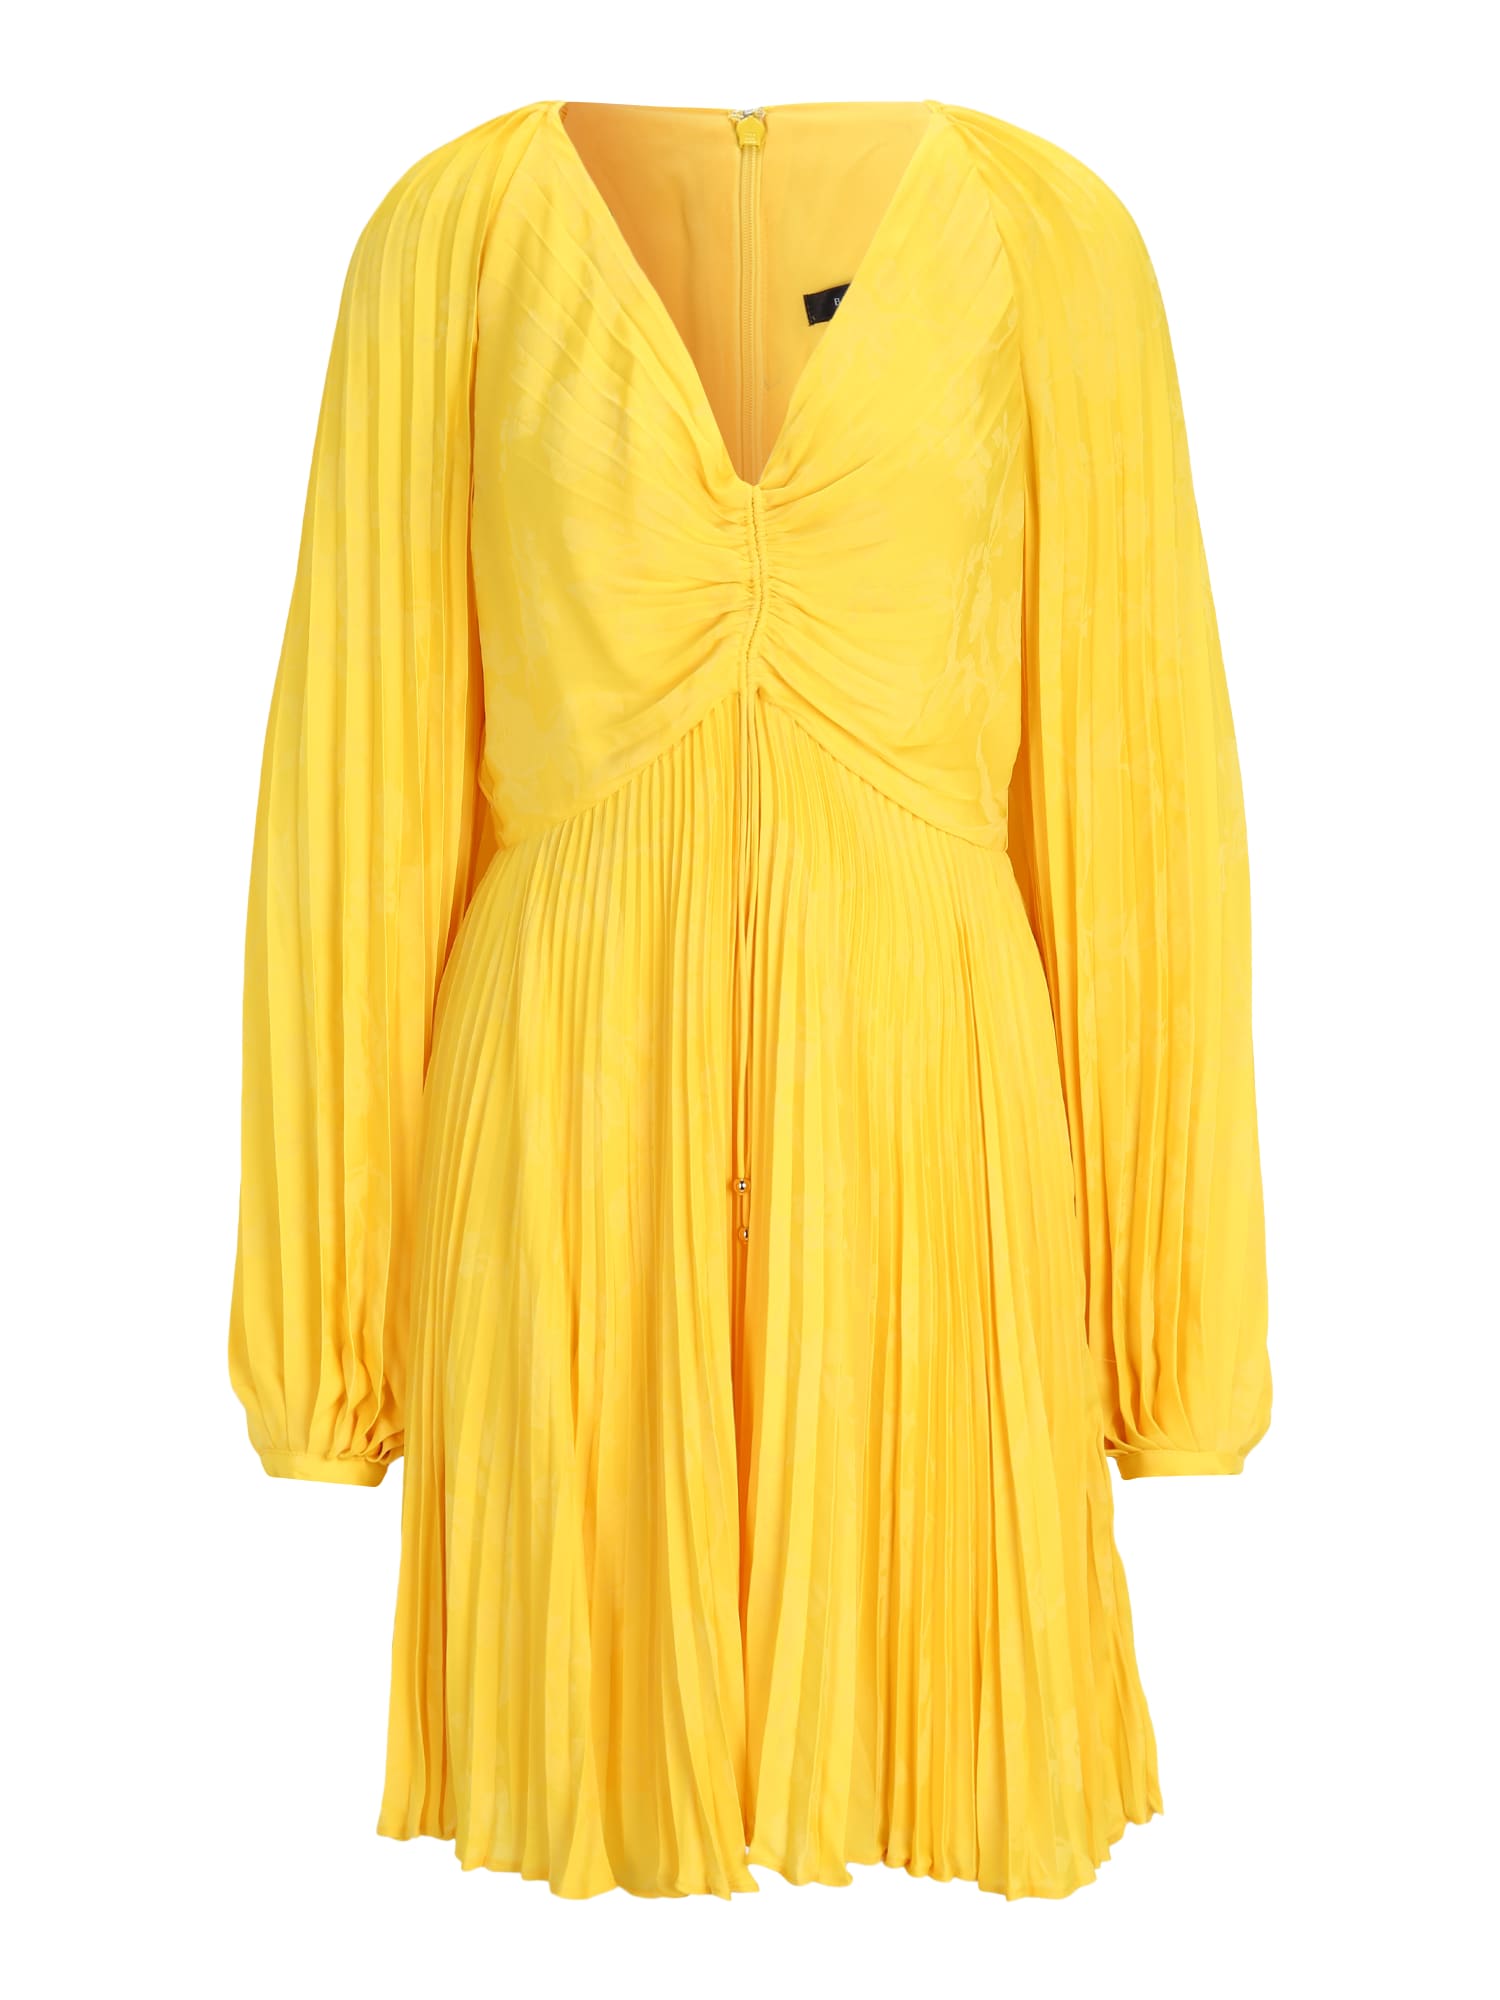 Banana Republic Tall Suknelė geltona / šviesiai geltona